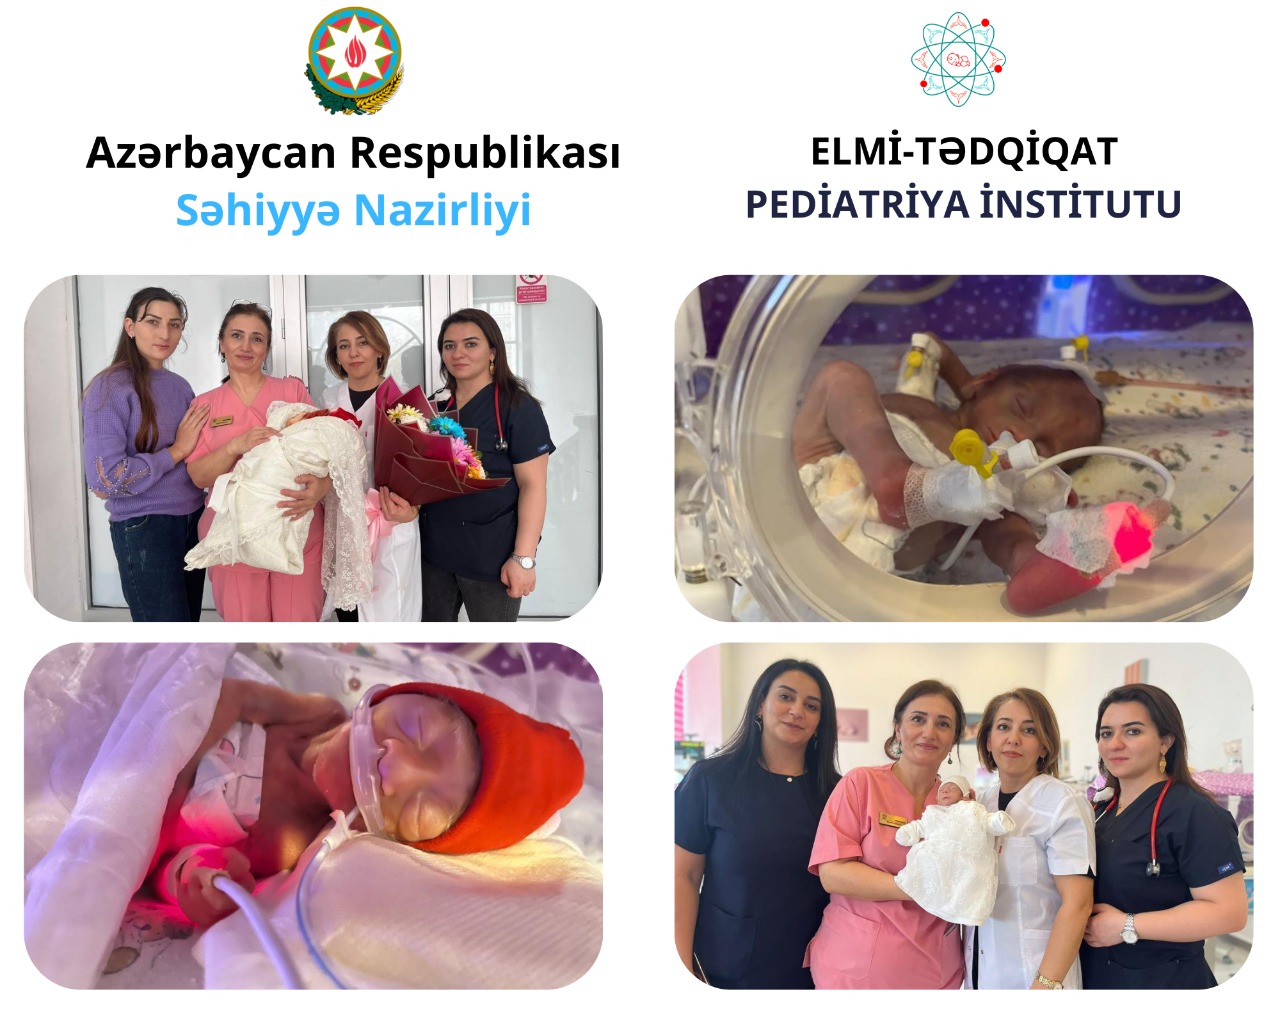 26 həftədə 600 qram çəki ilə doğulan körpə evinə yola salınıb - Elmi-Tədqiqat Pediatriya İnstitutu